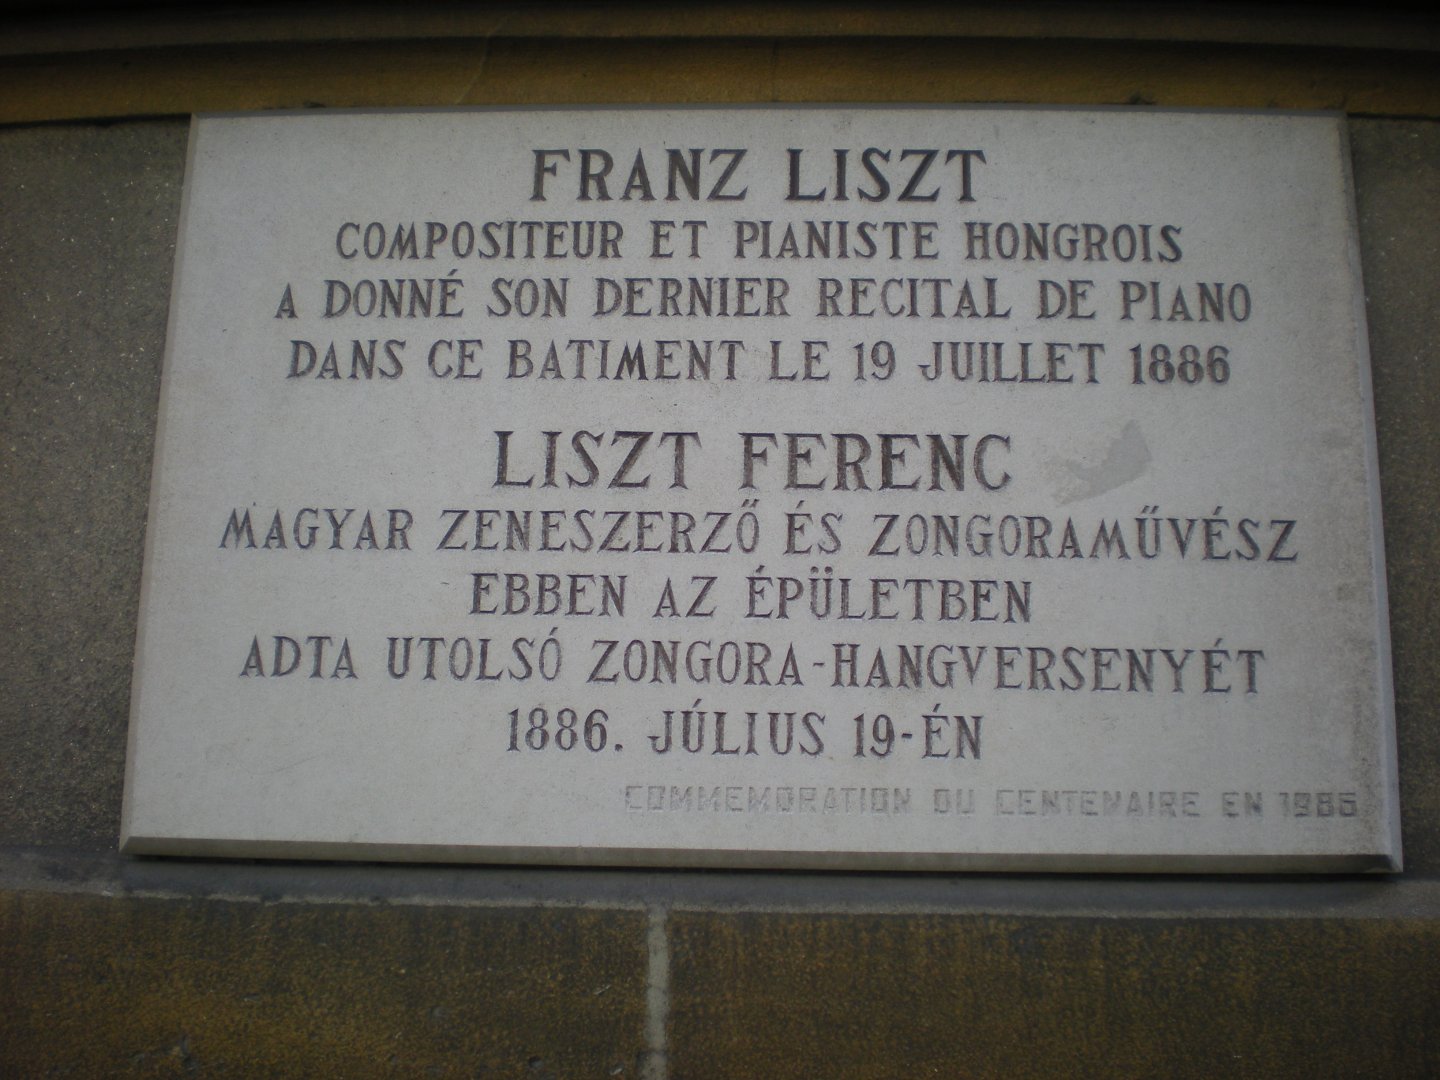 Liszt emléktáblája a kaszinó épületén